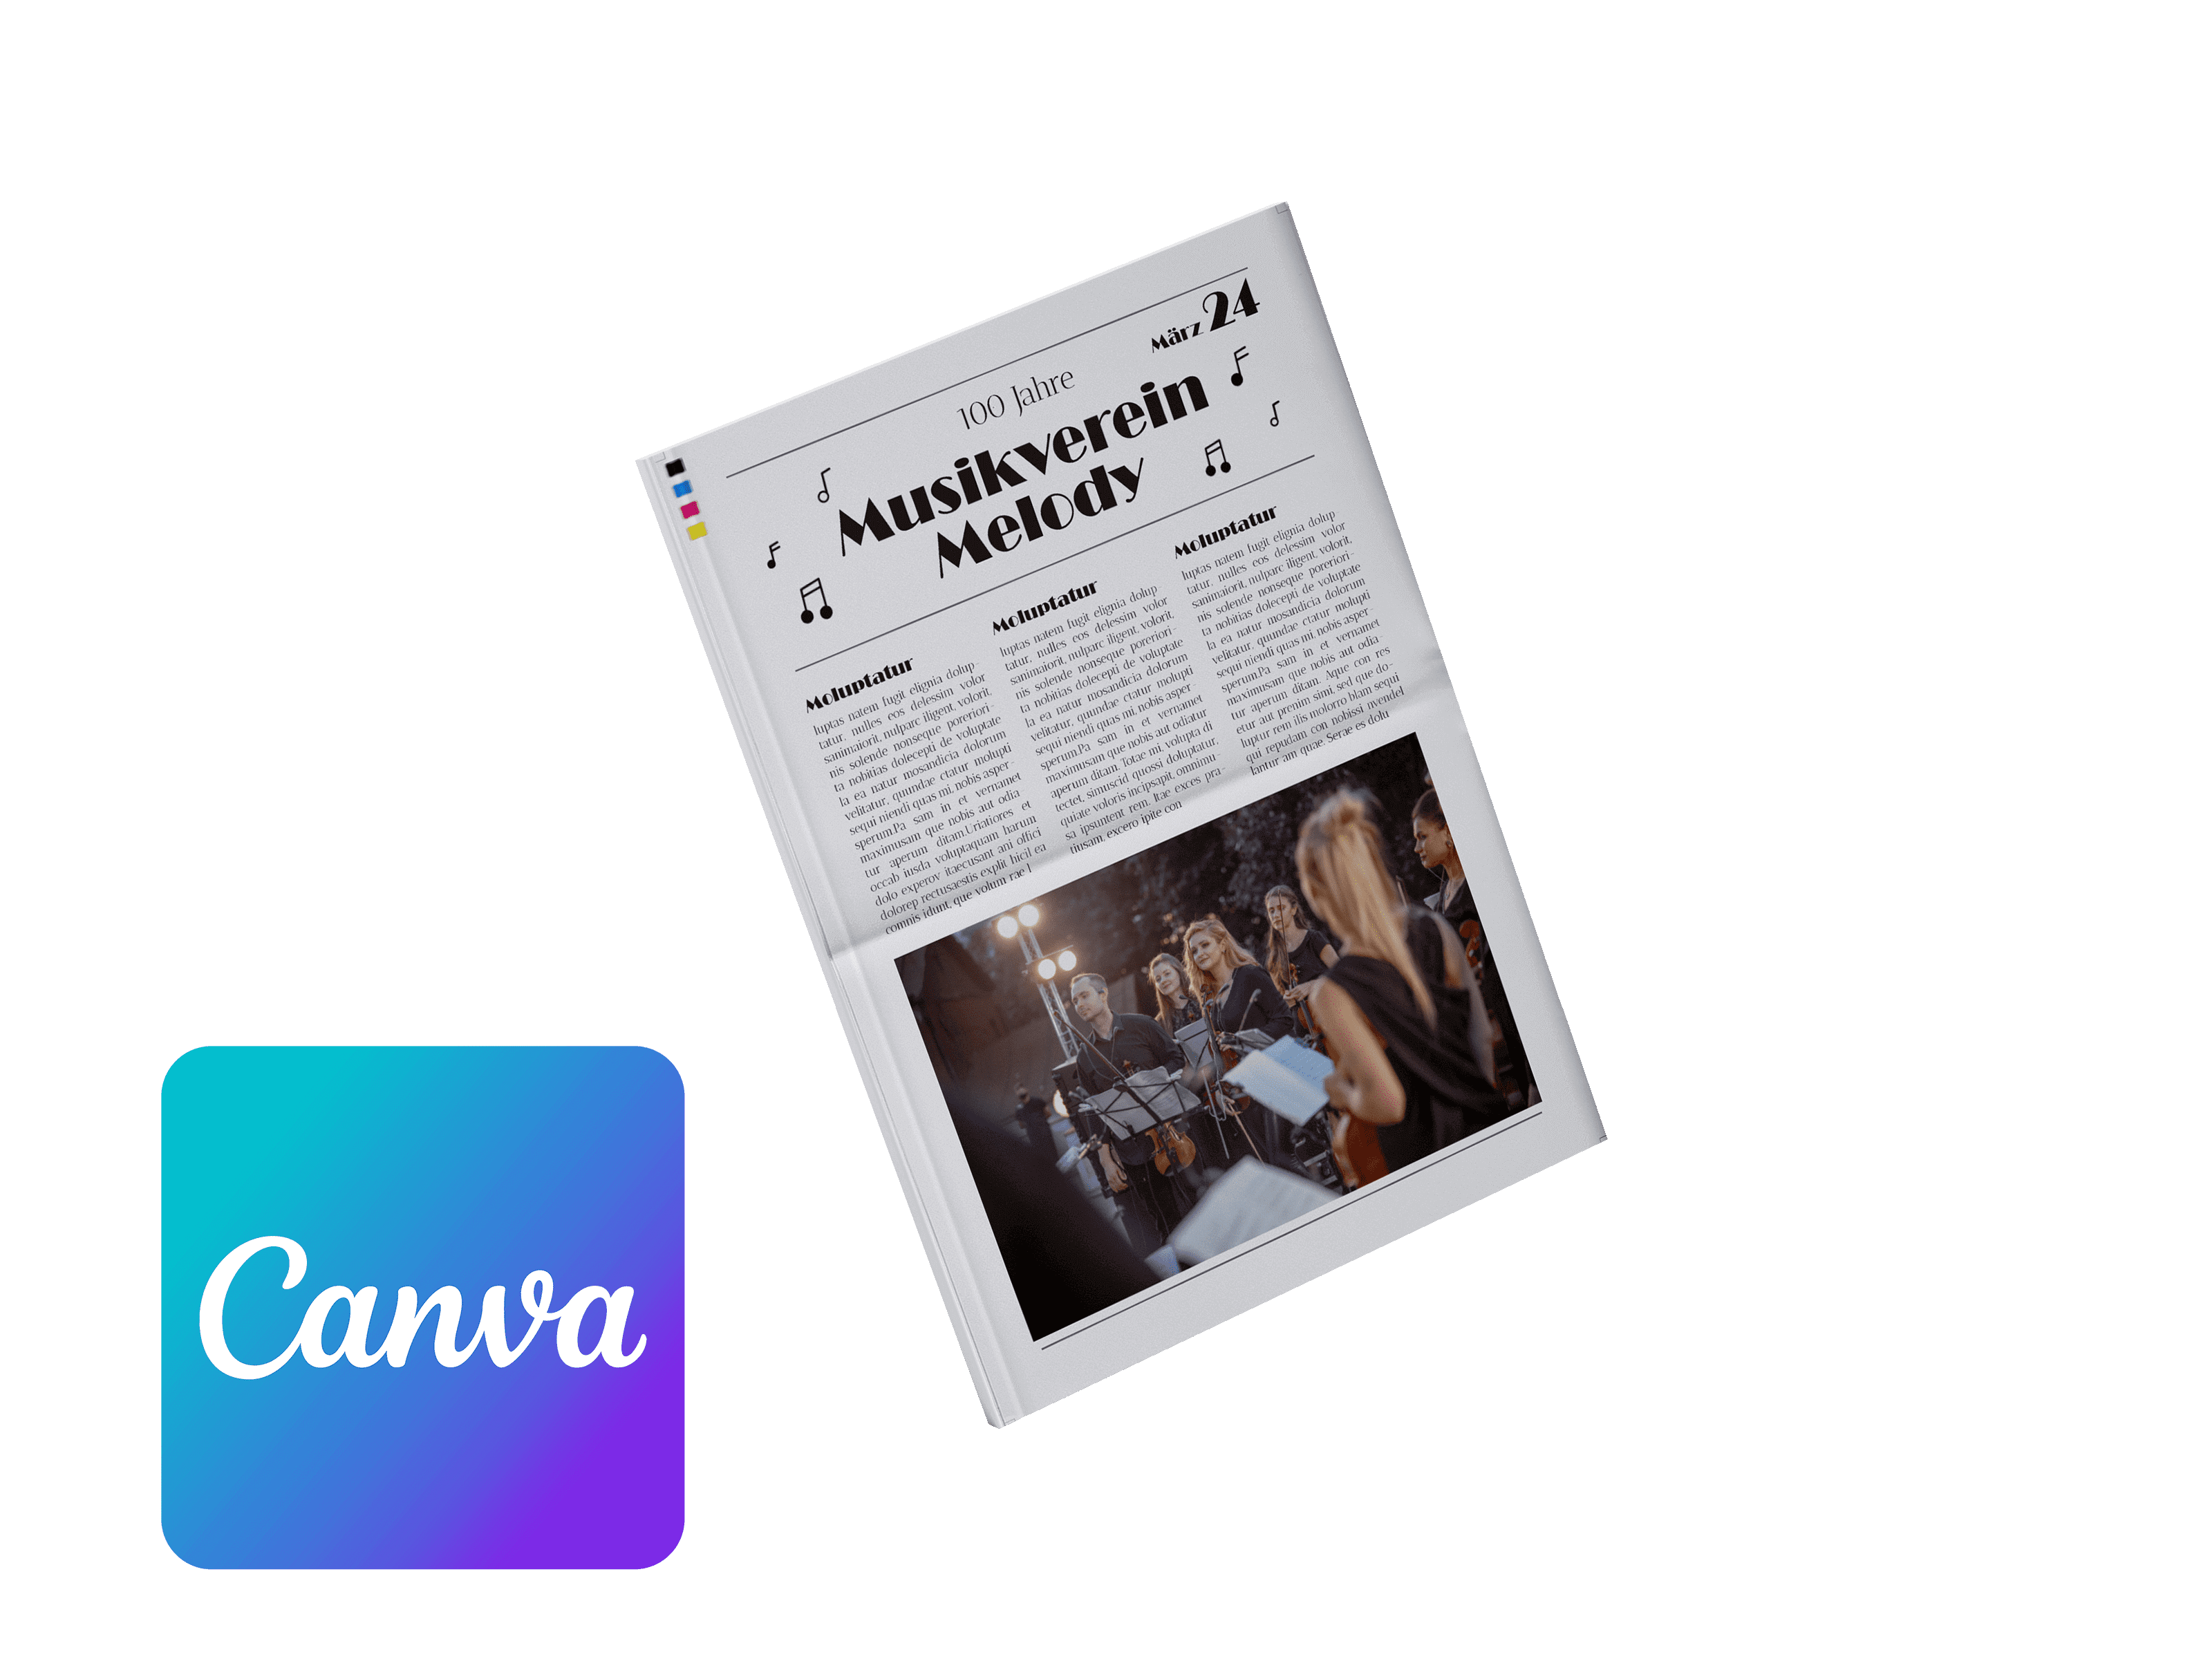 Vereinszeitung für Musikverein online mit Canva gestalten